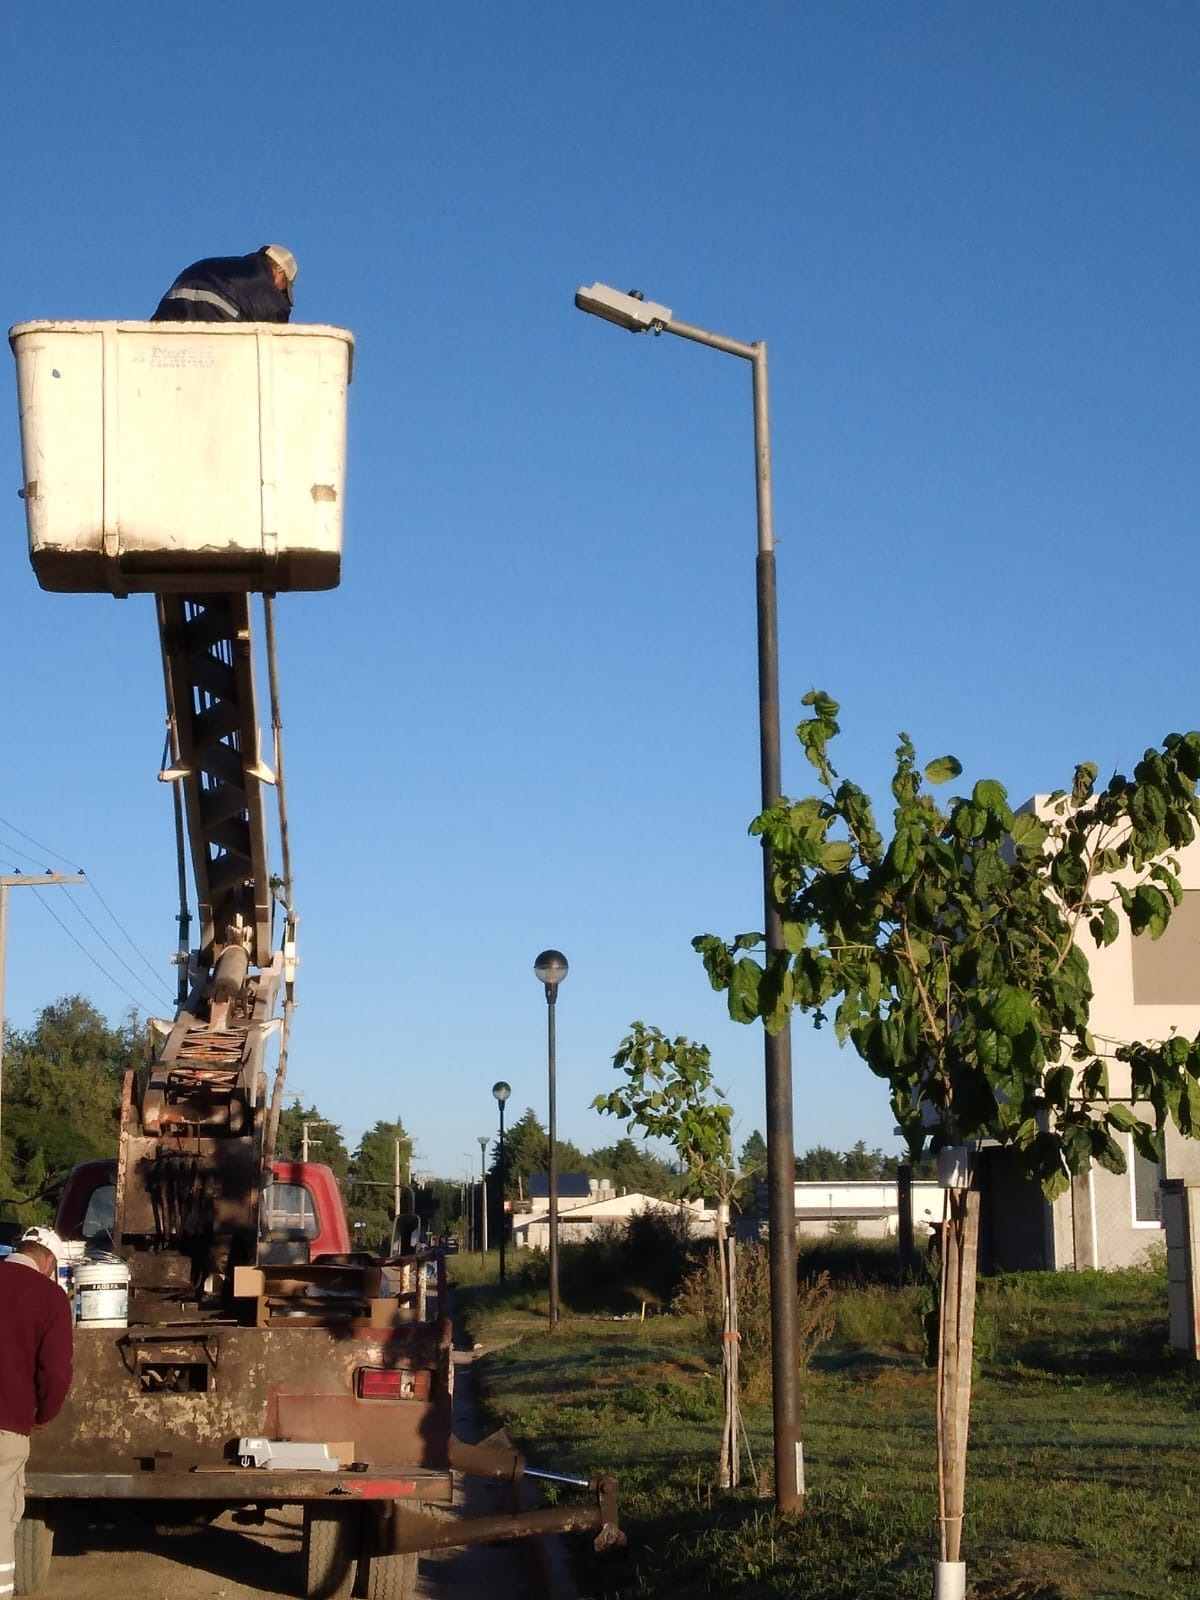 La municipalidad está realizando trabajos de mantenimiento y reposición de luminarias en varios puntos estratégicos que incluyen: Pasaje Suizo y Laprida, Sáenz Peña y Tucumán, barrio El Panal y Patio Alberdi